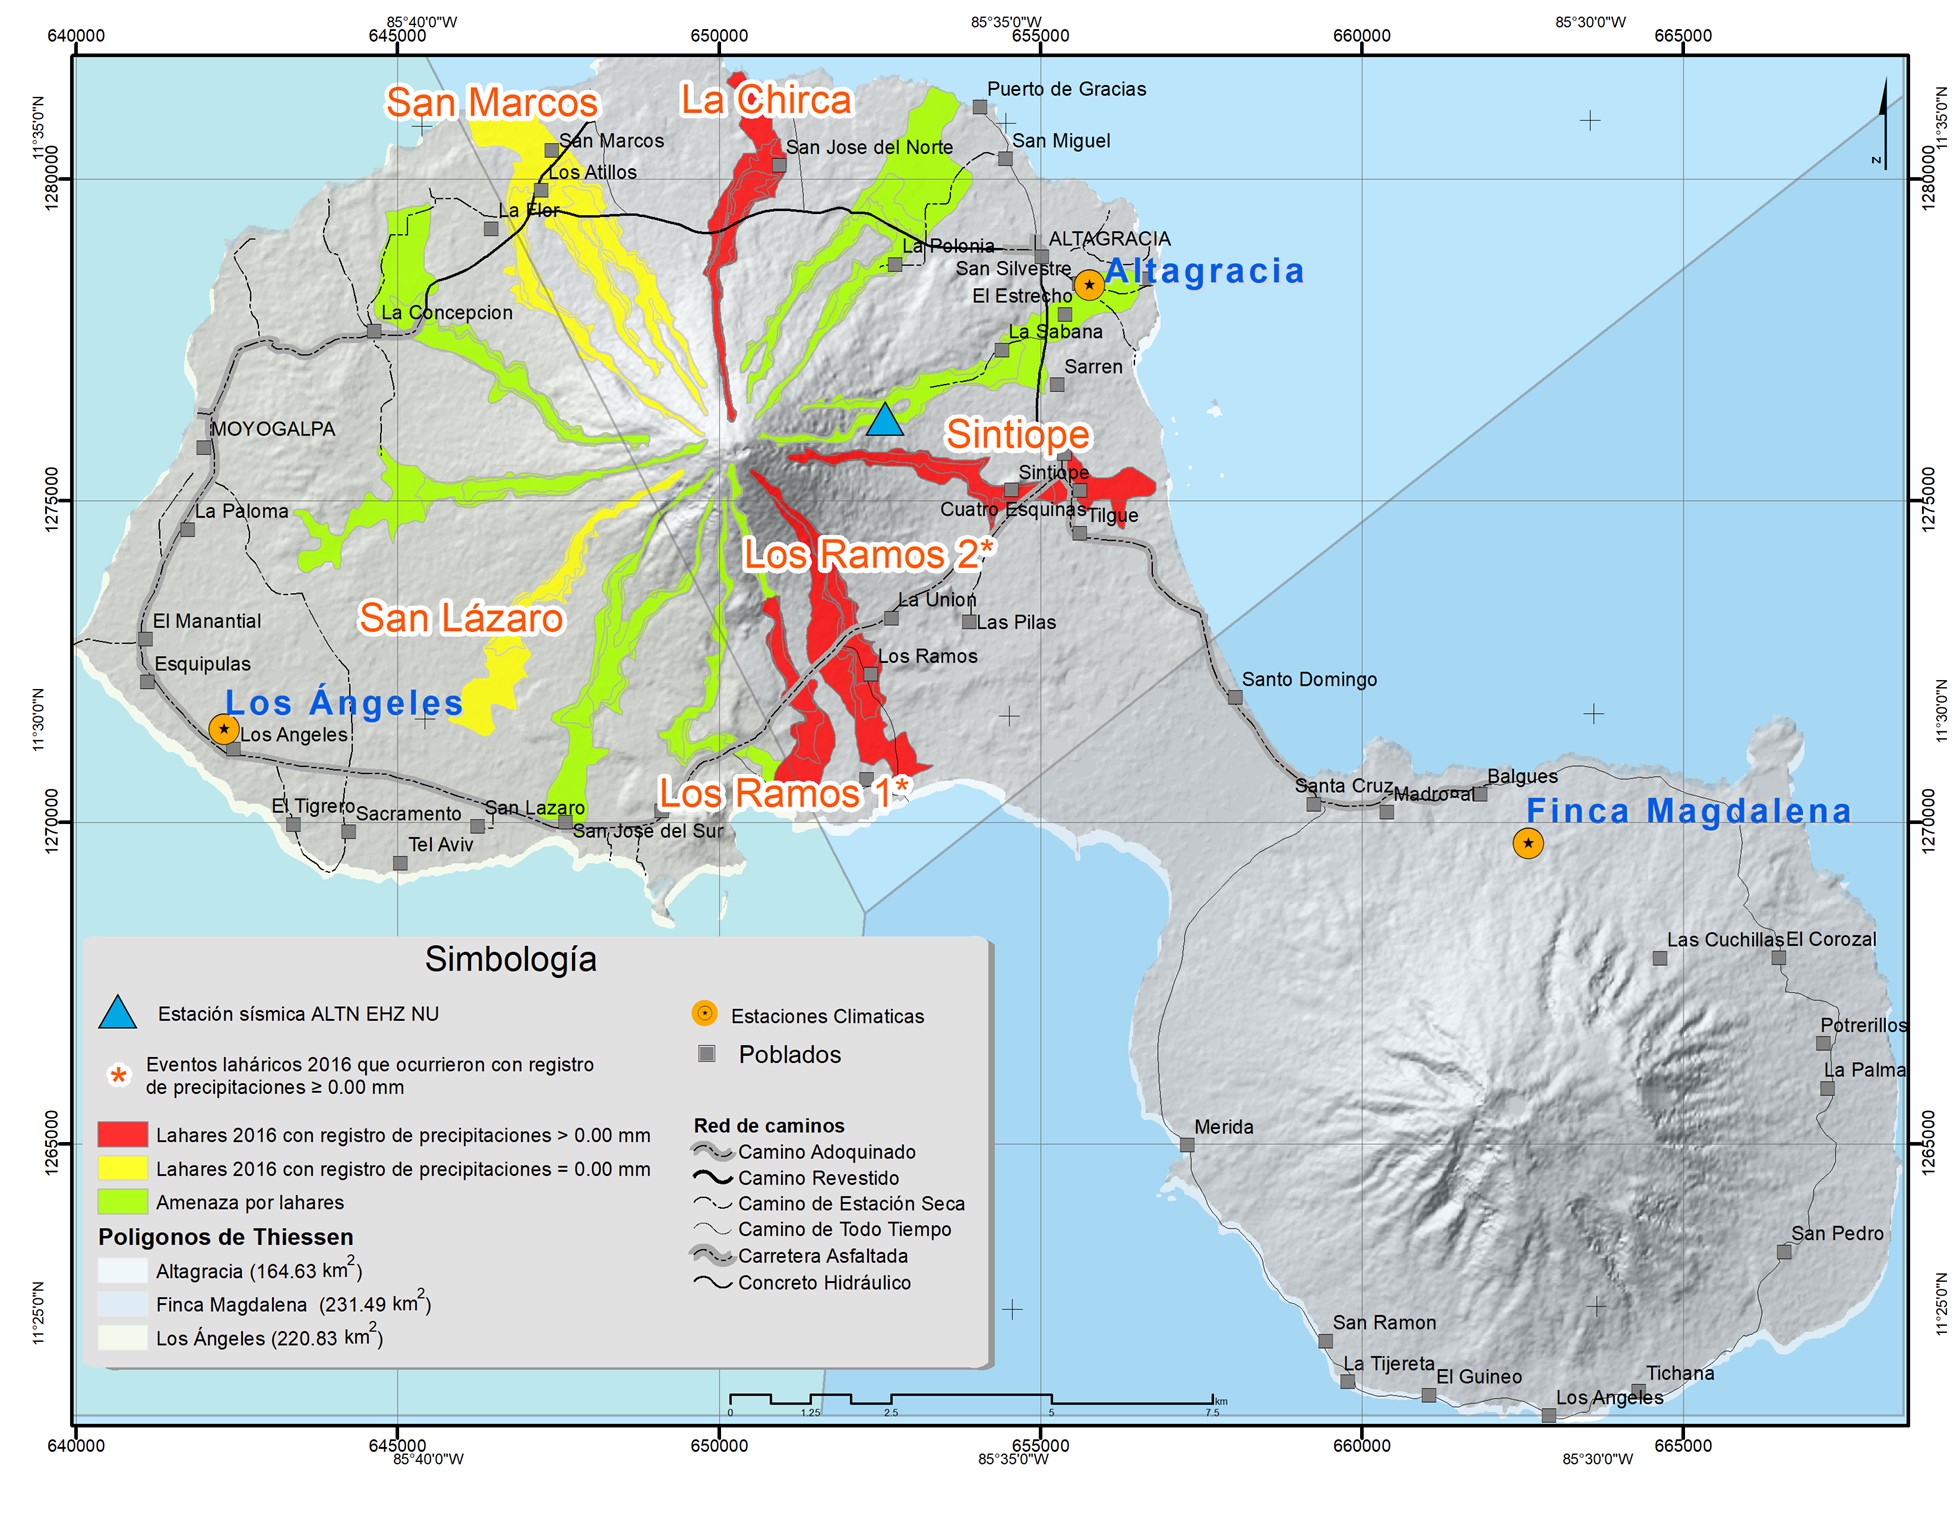 Ubicación de estaciones meteorológicas, mapeo de lahares
ocurridos durante el 2016 y áreas del estudio del mapa de amenaza de lahares
establecido por SINAPRED (2005).